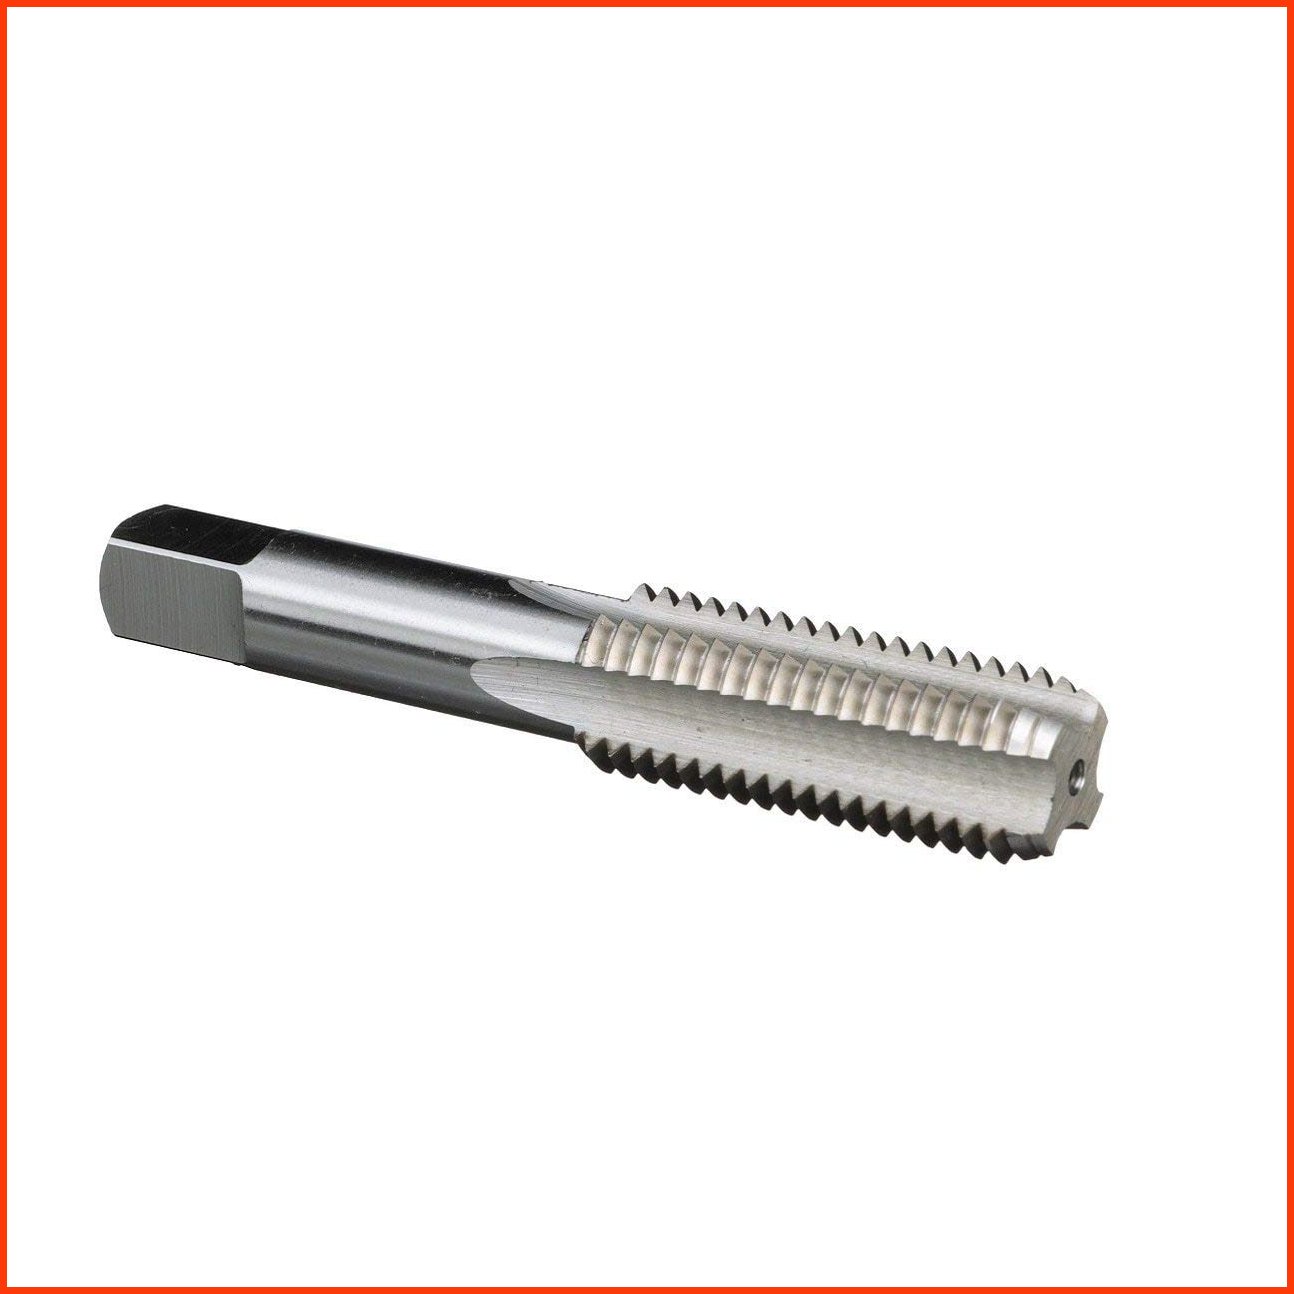 並行輸入品Drill America - DWT54728P12 12-13 UNC High Speed Steel Bottoming Tap Pack of 12